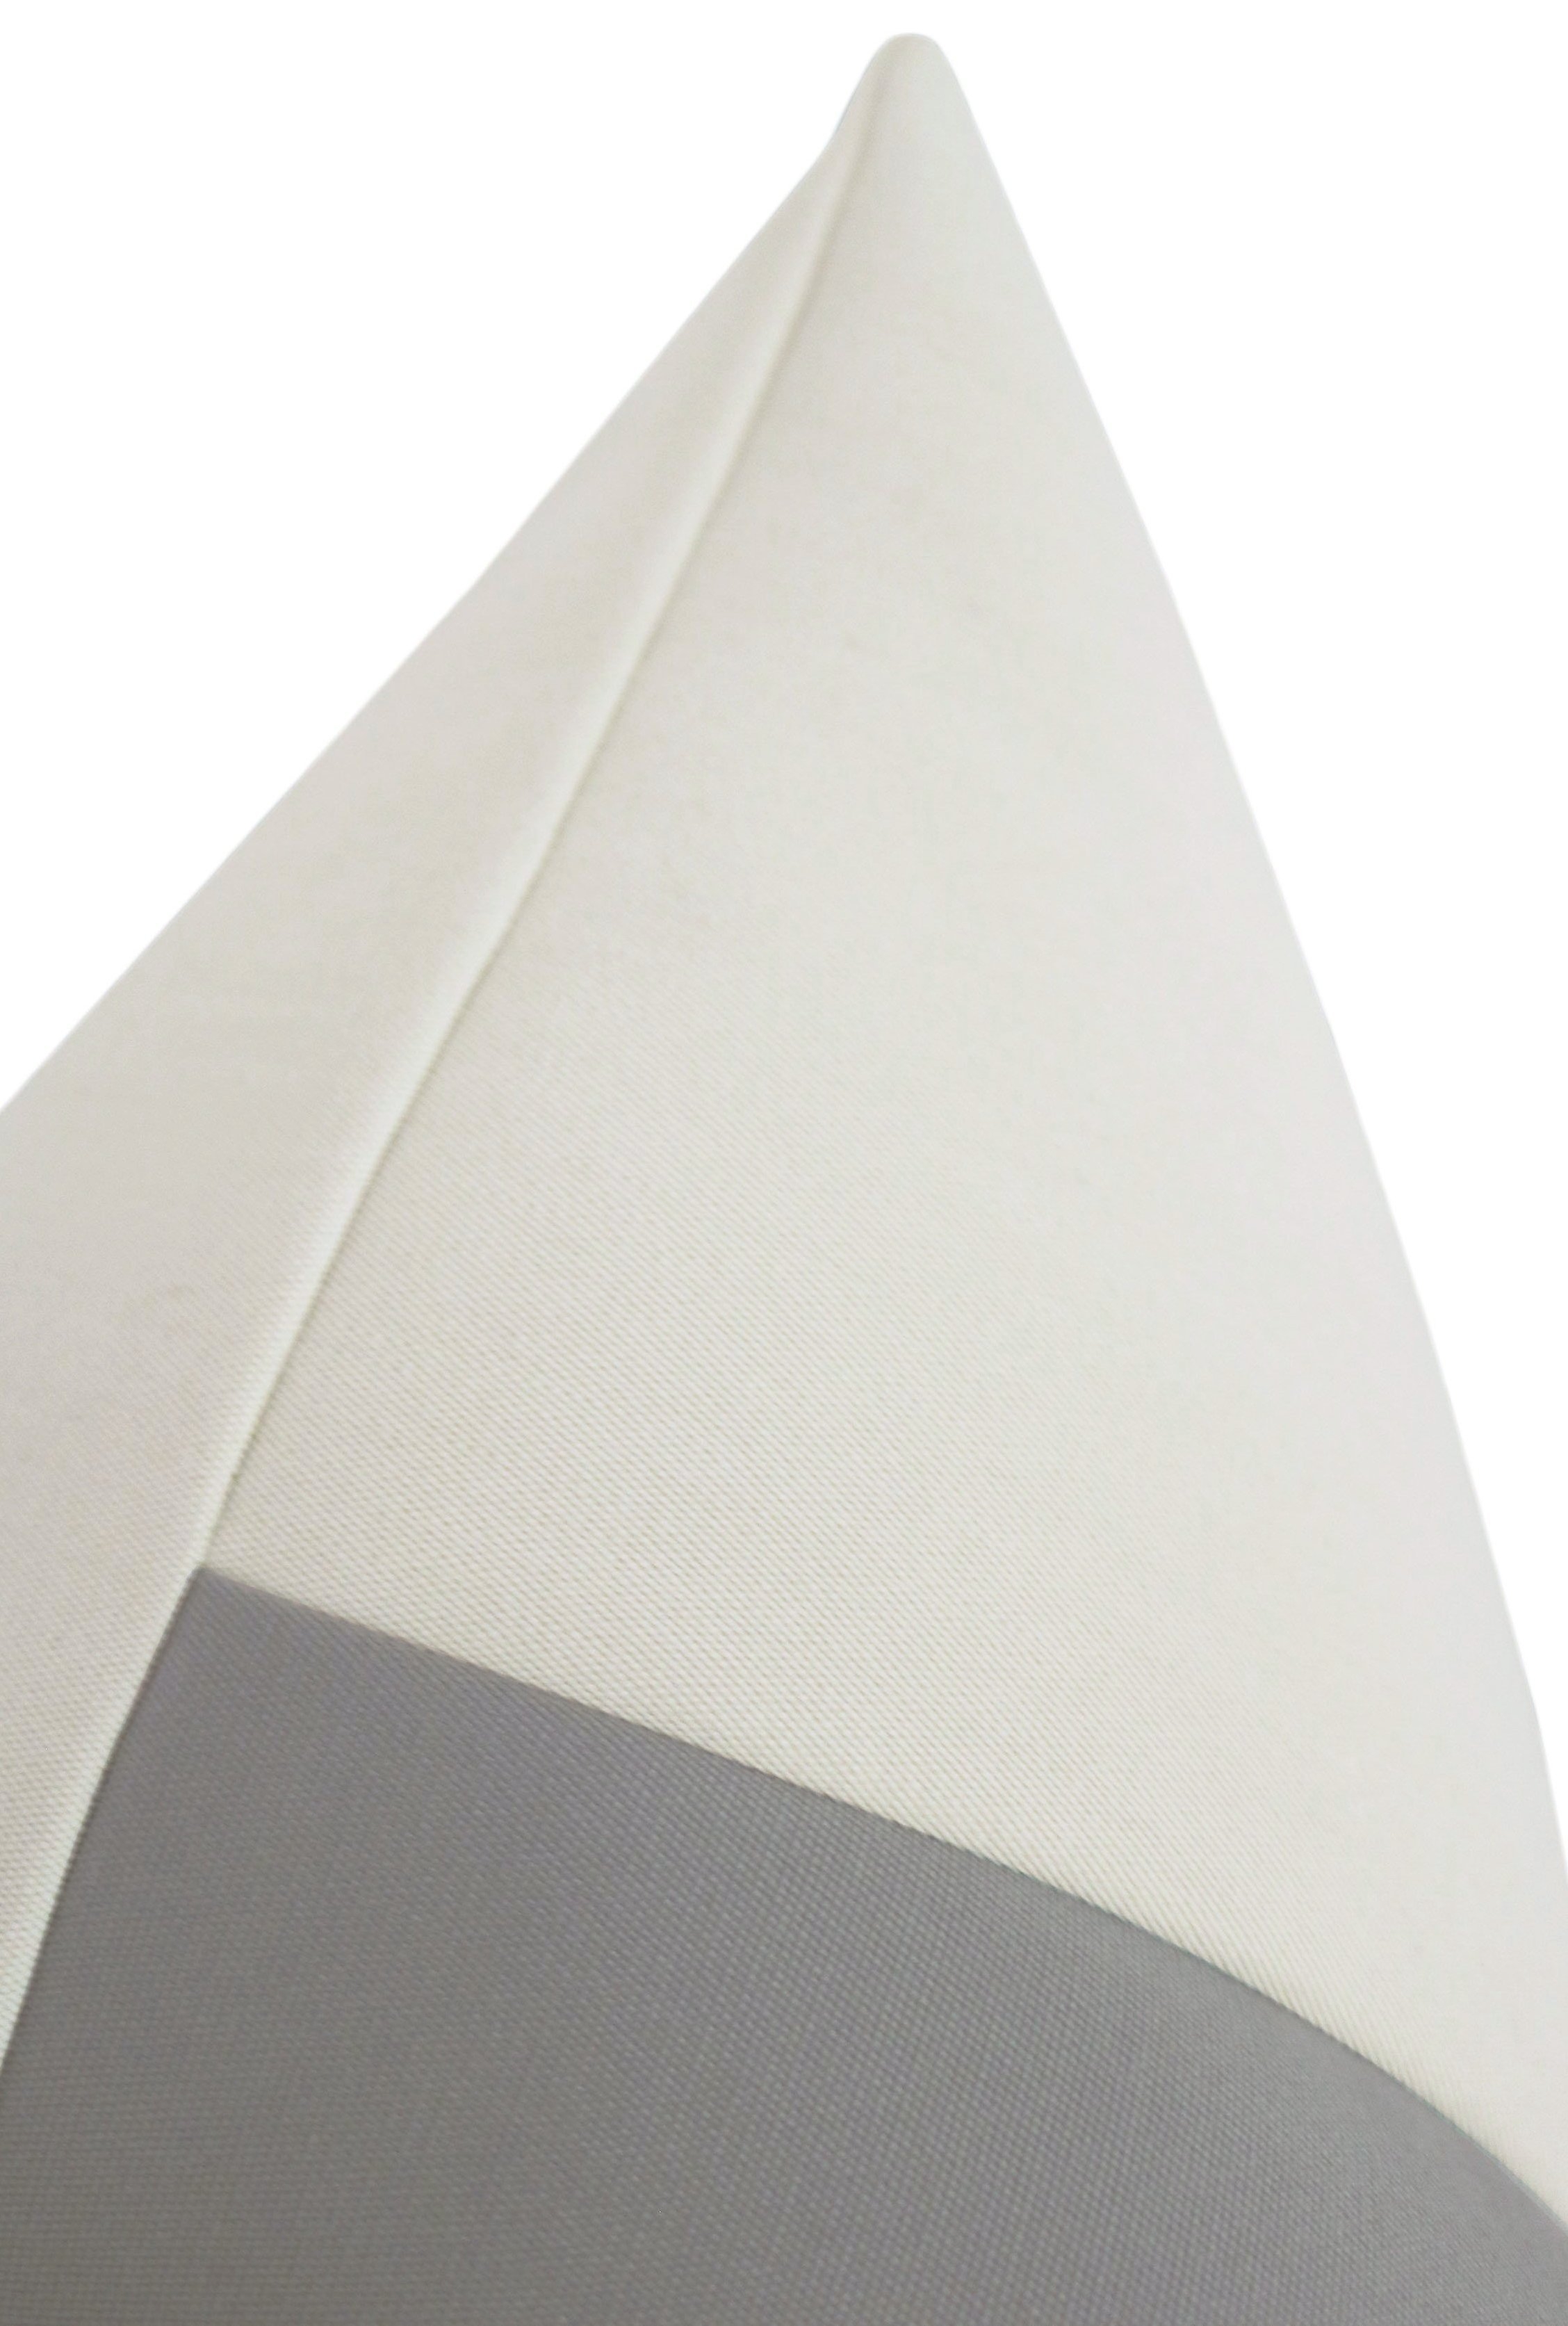 Outdoor Panel // Linen & Dove Grey - 18" X 18" - Image 3